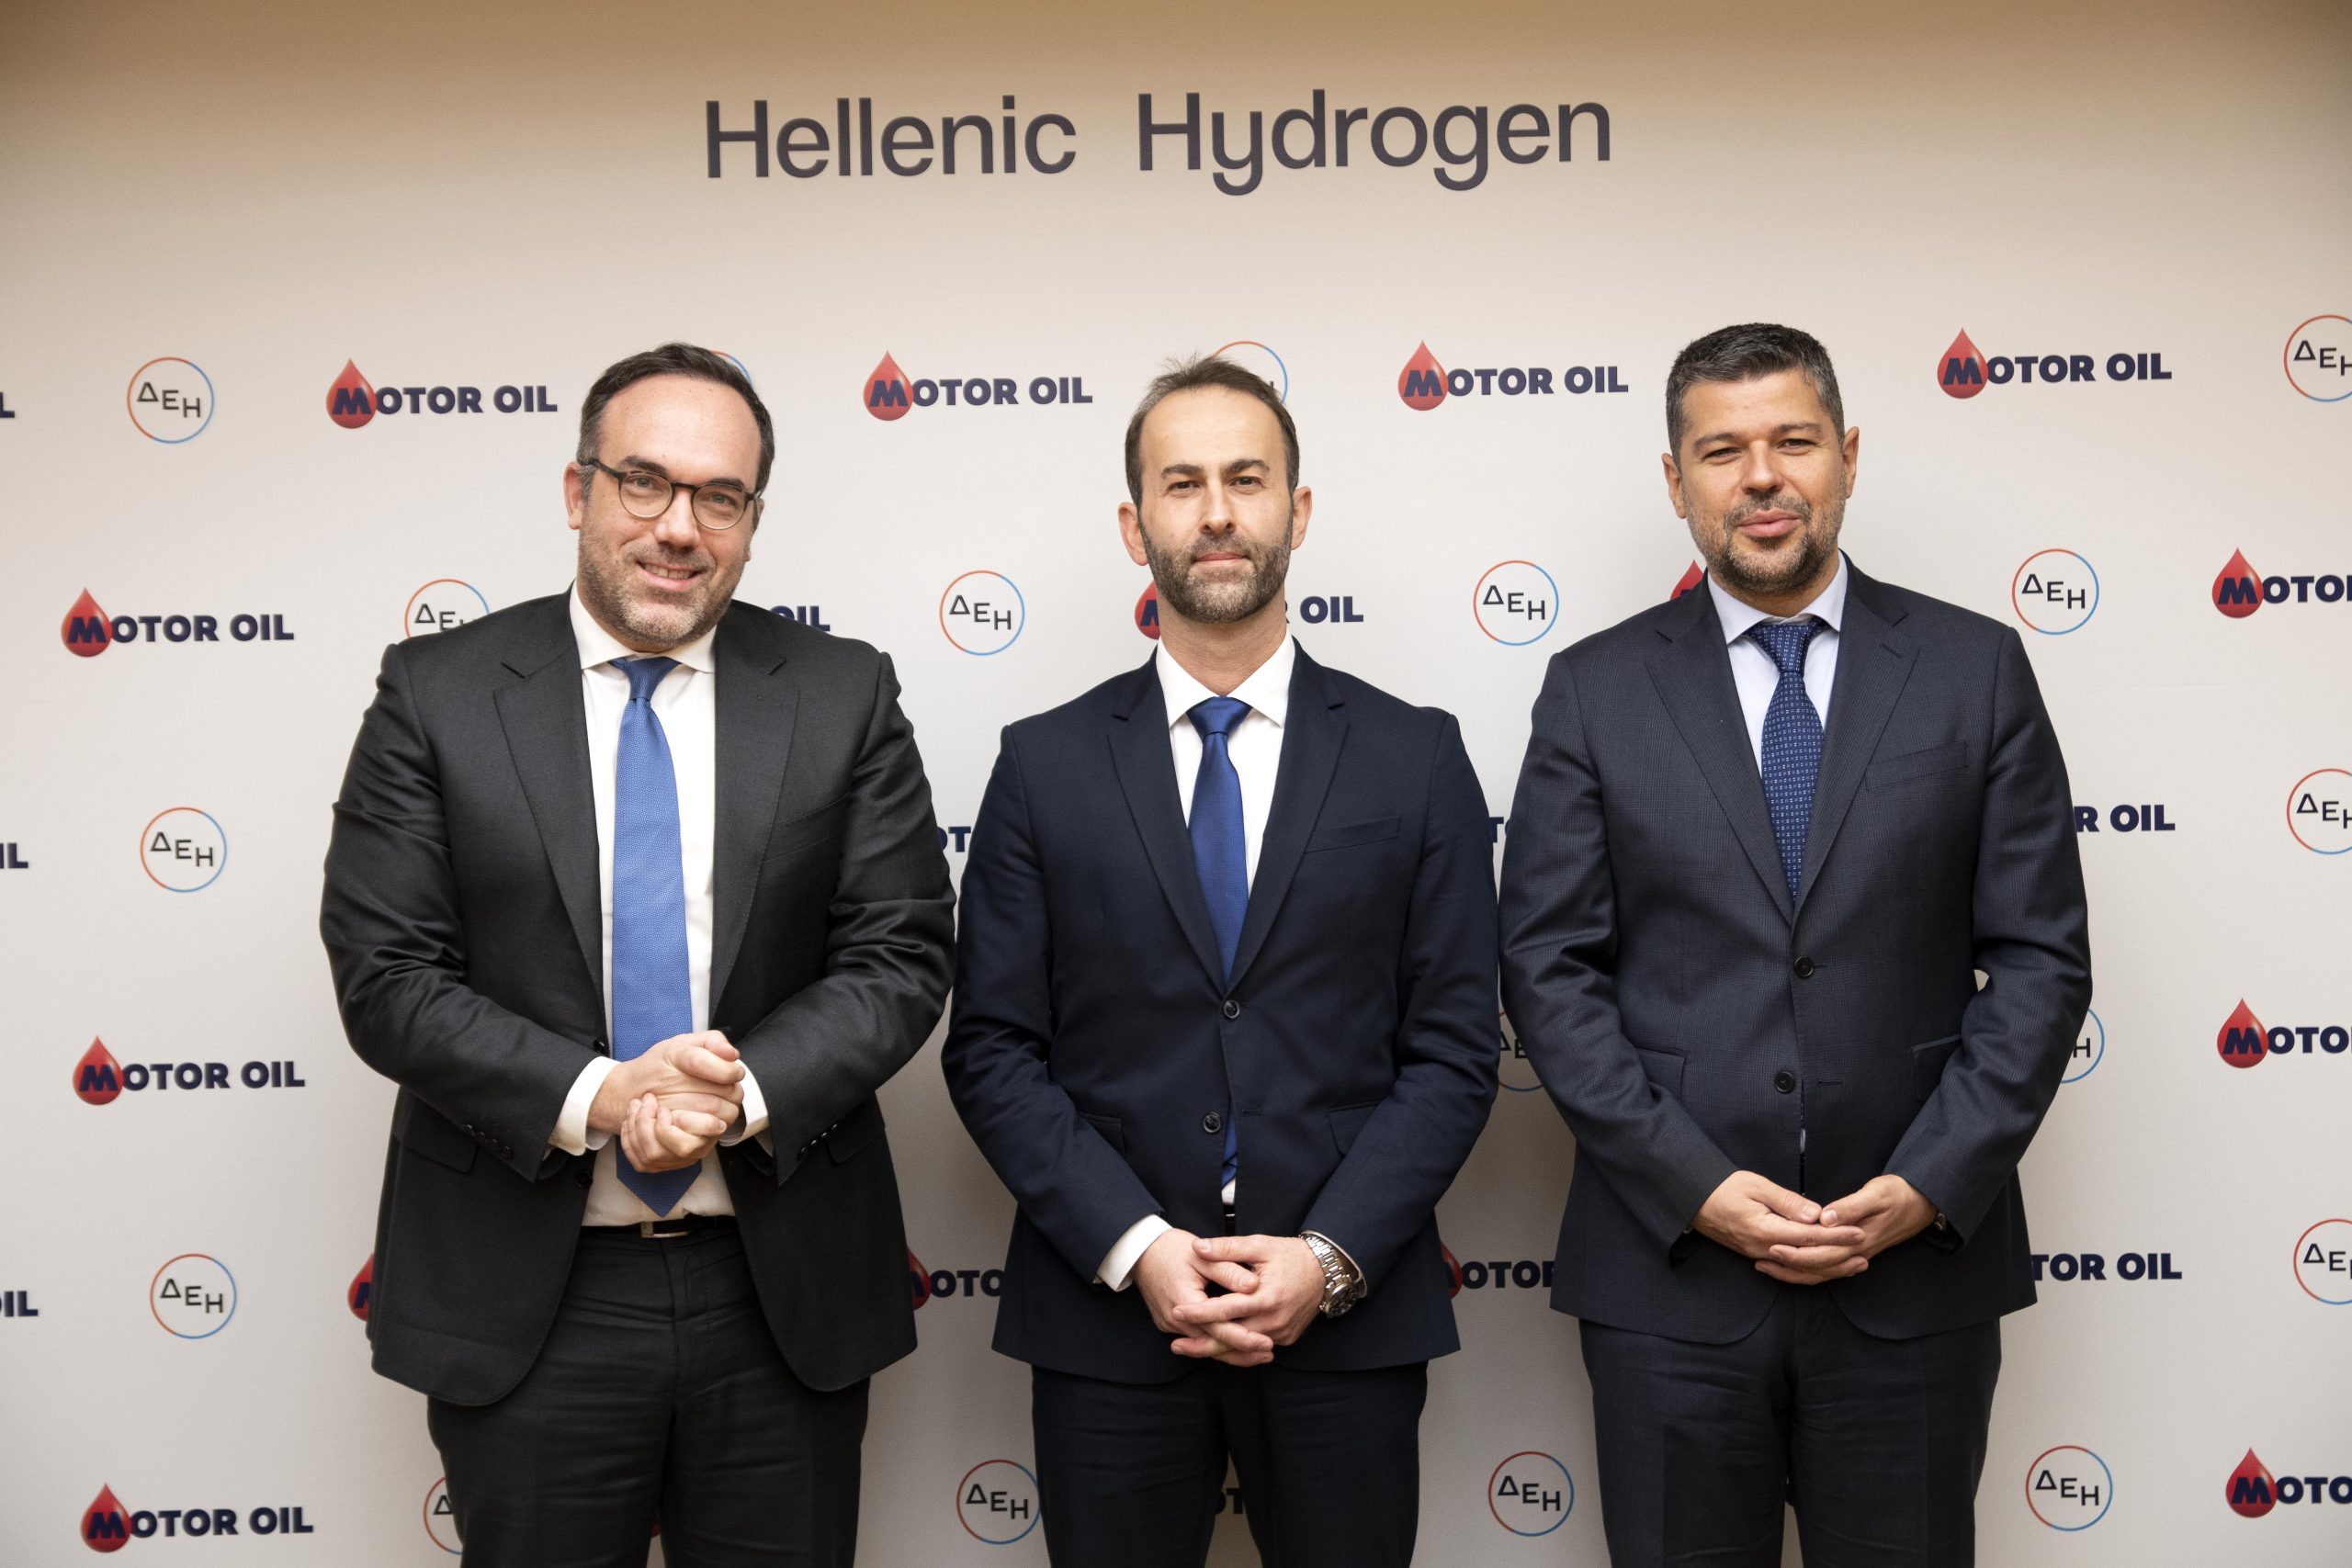 Ηellenic Hydrogen: Συστάθηκε η κοινοπρακτική εταιρεία των Motor Oil και ΔEH